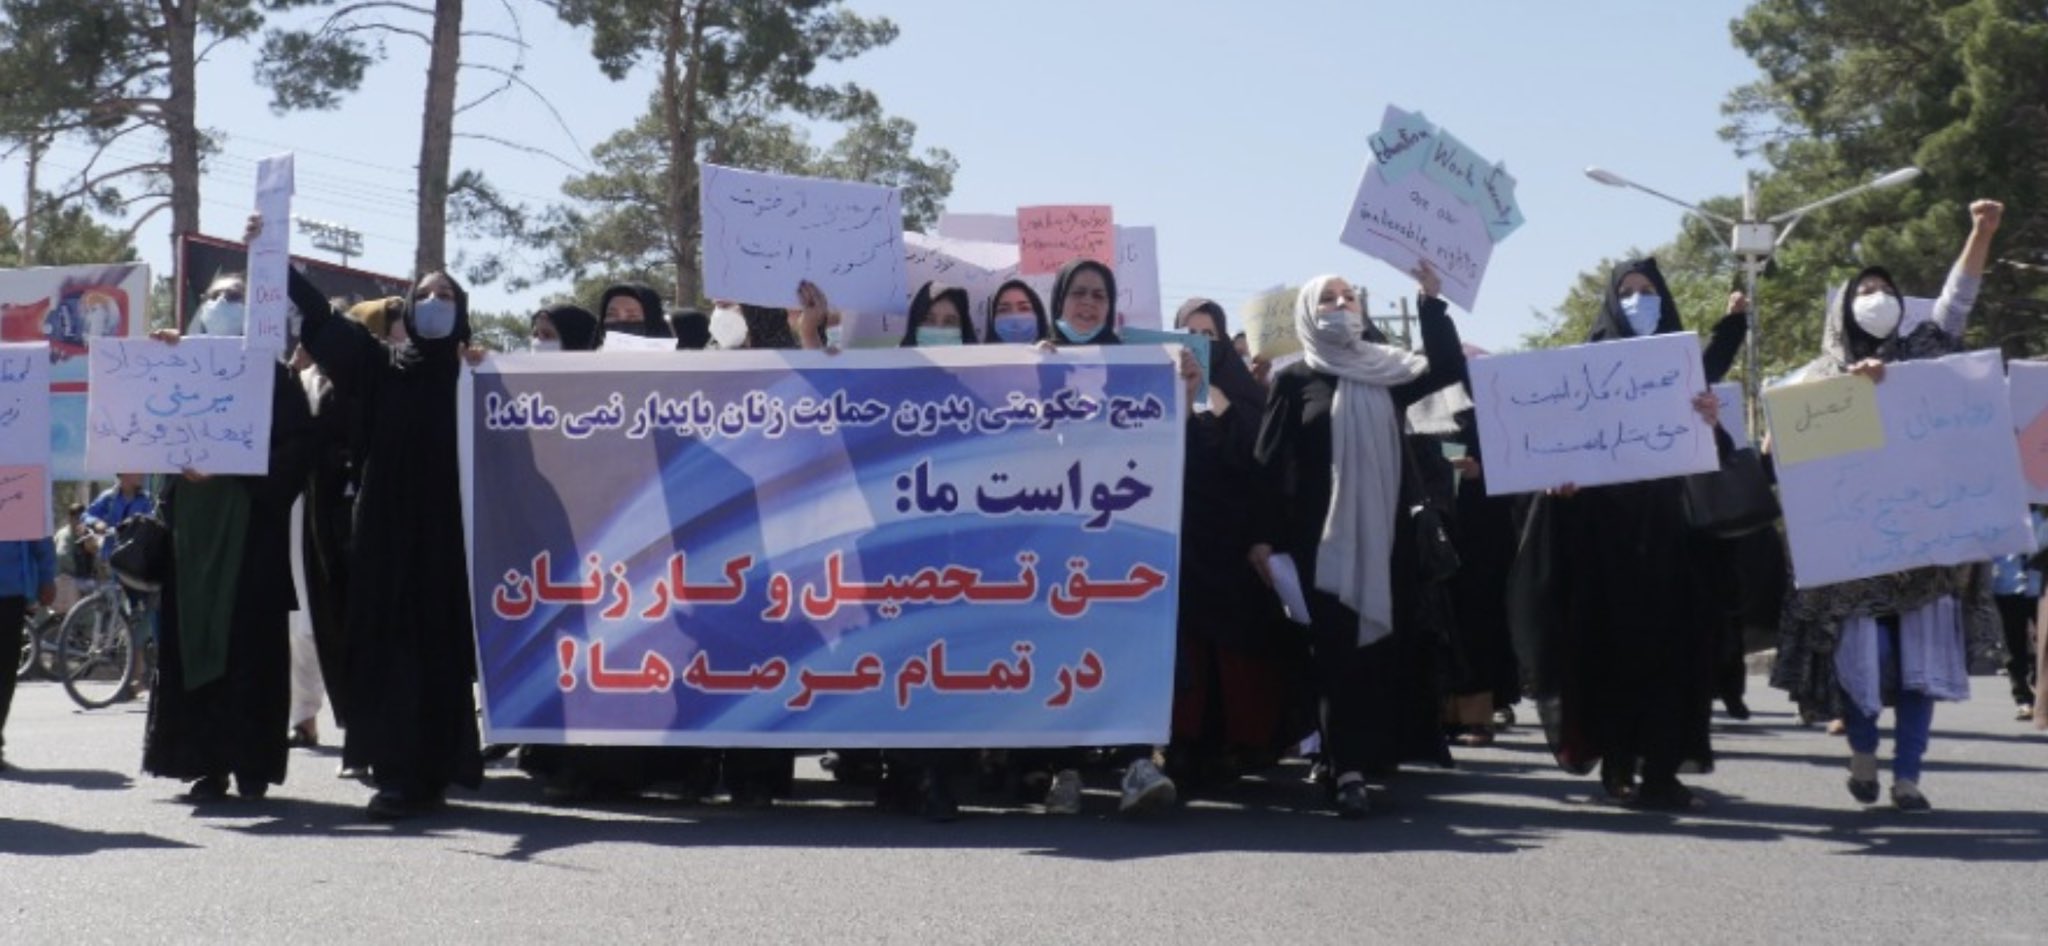 В Афганистане женщины решились выйти на акцию за свои права: фото, видео